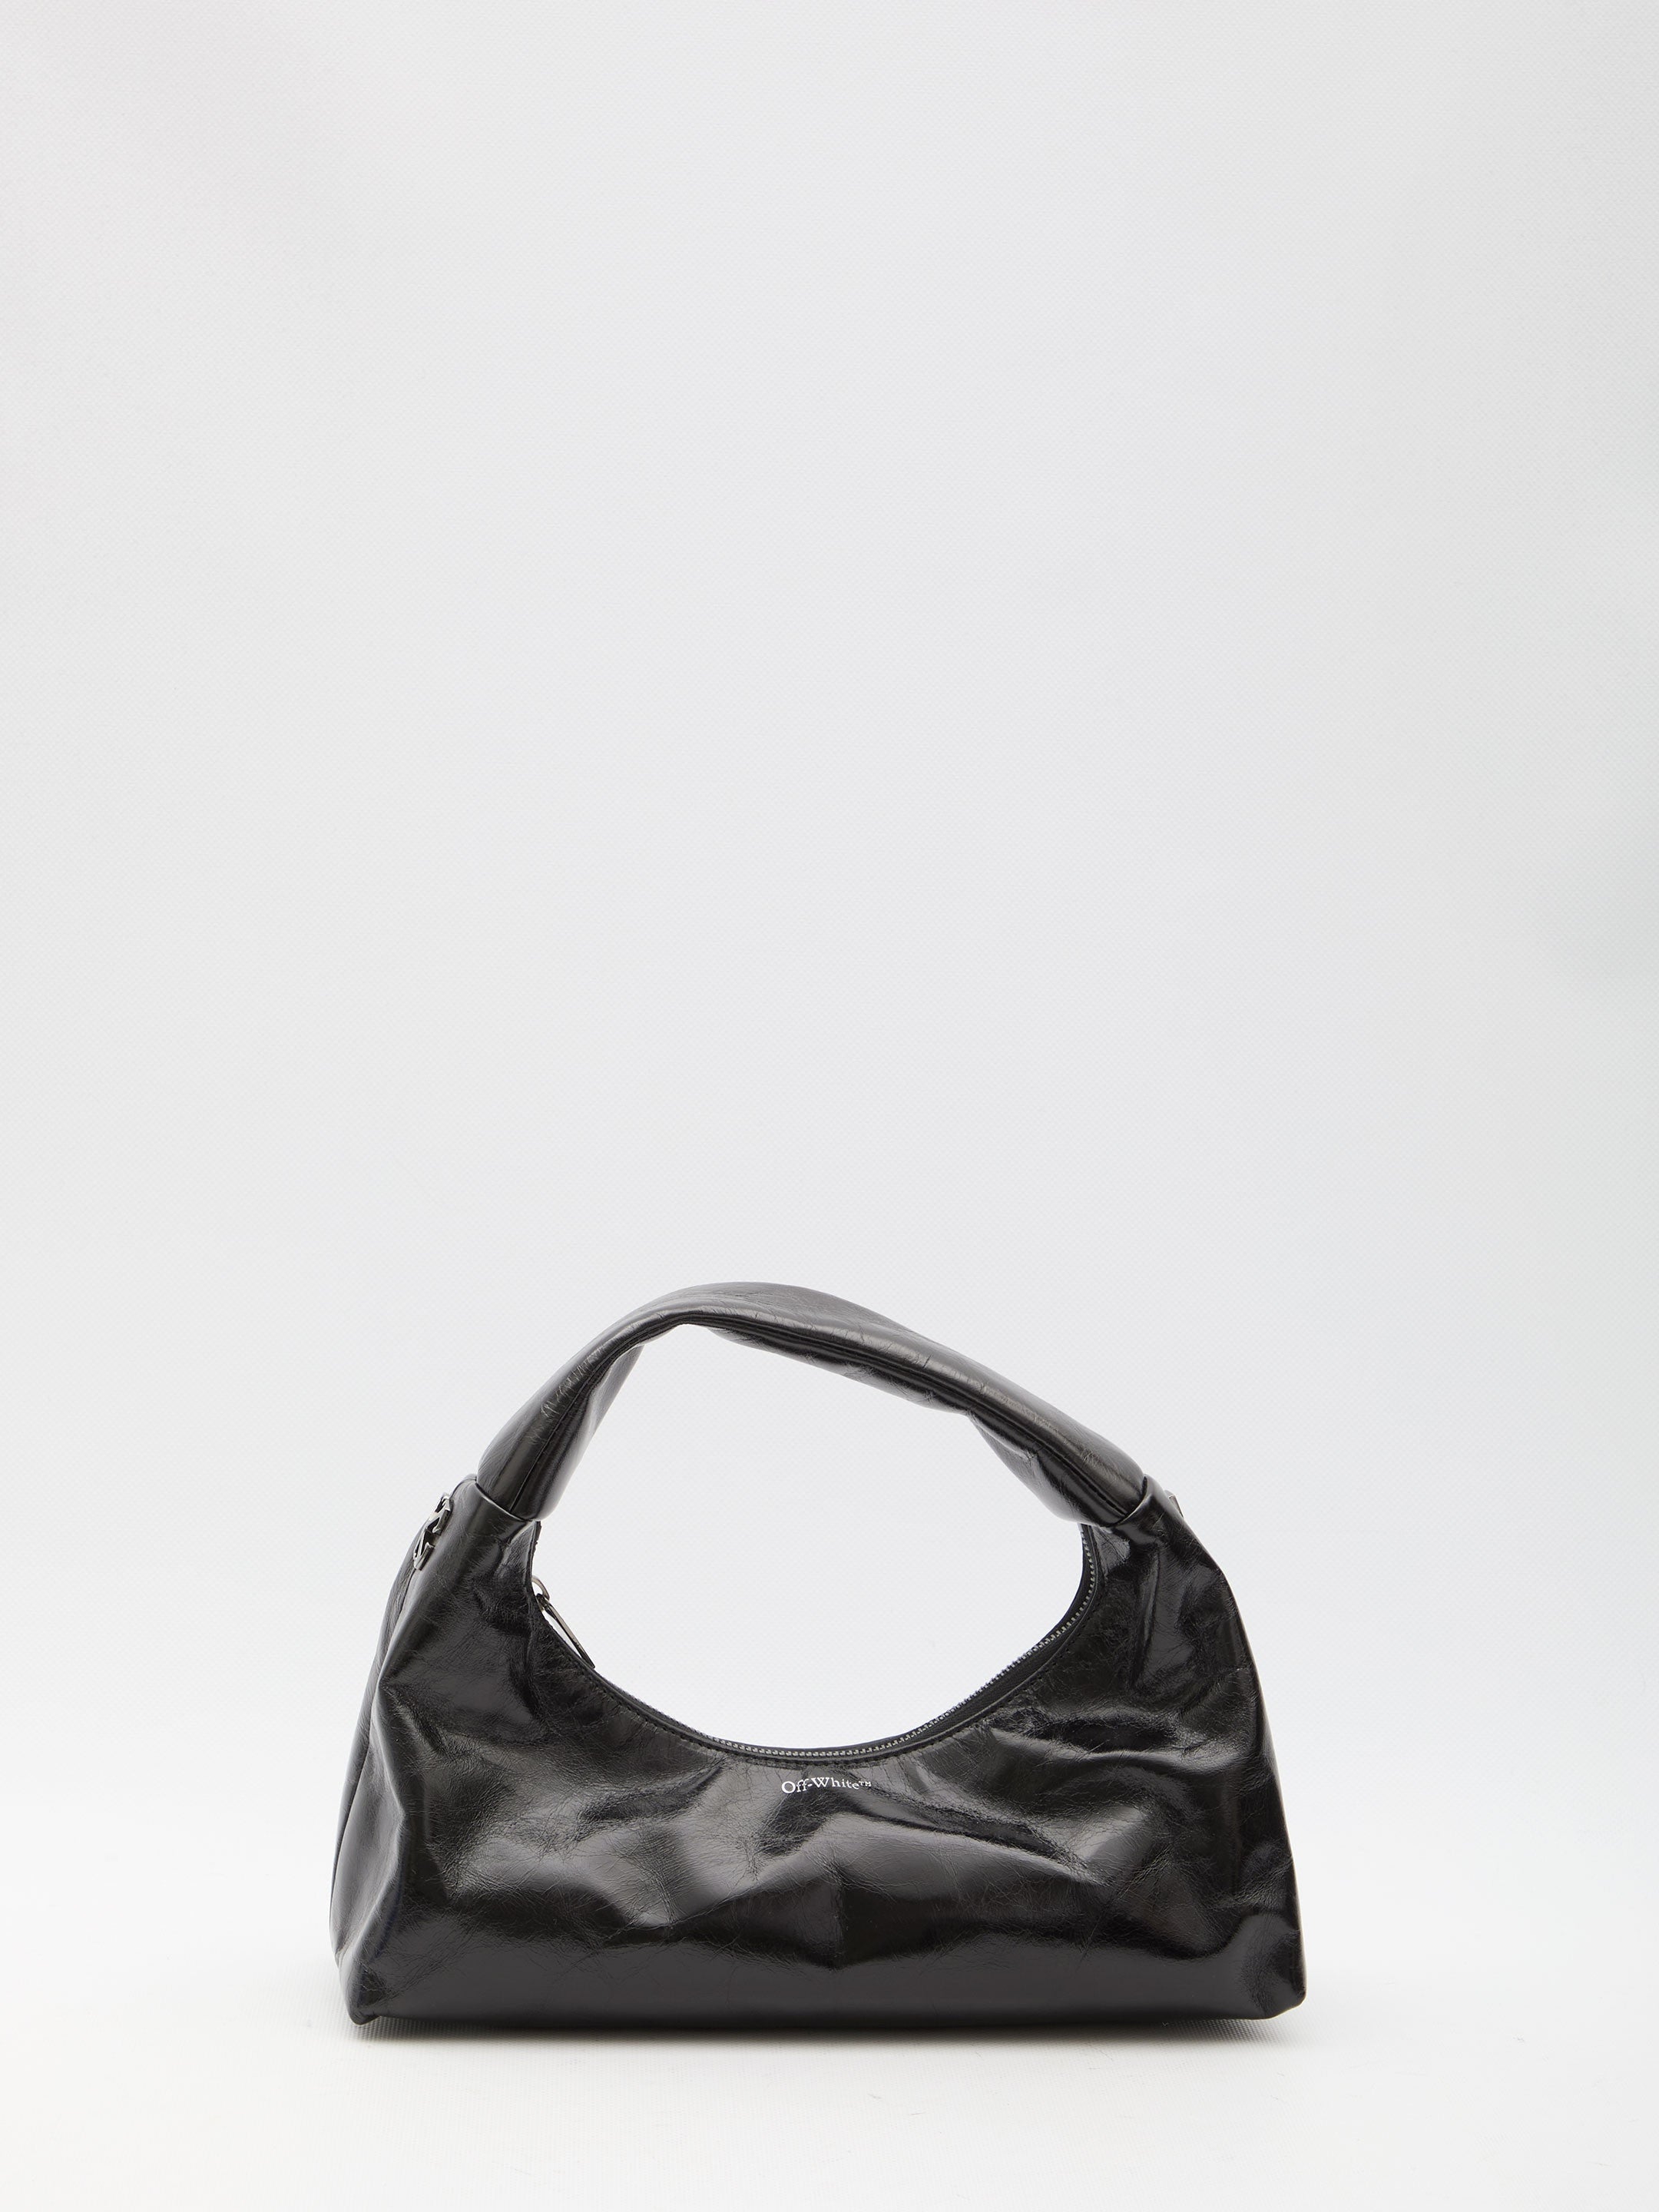 OFF-WHITE-OUTLET-SALE-Arcade-shoulder-bag-Taschen-QT-BLACK-ARCHIVE-COLLECTION.jpg